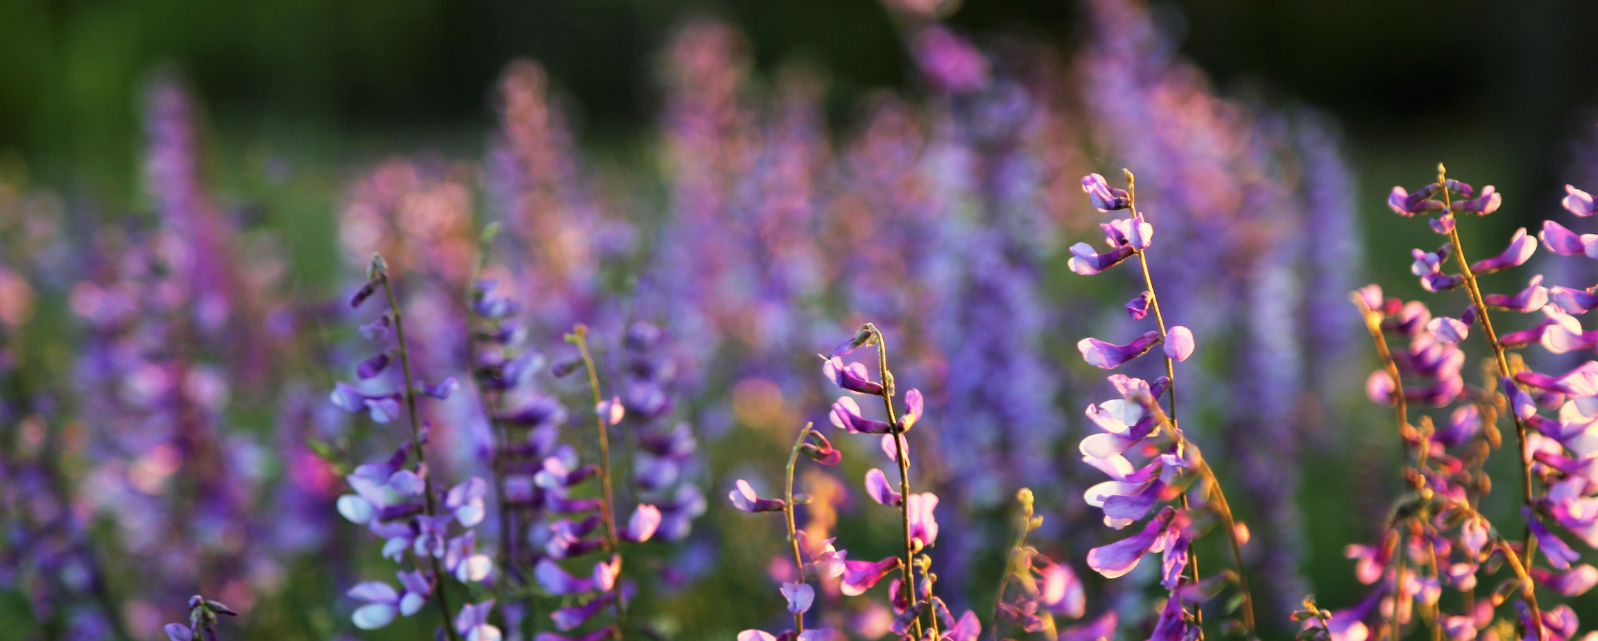 Purple Flower Background